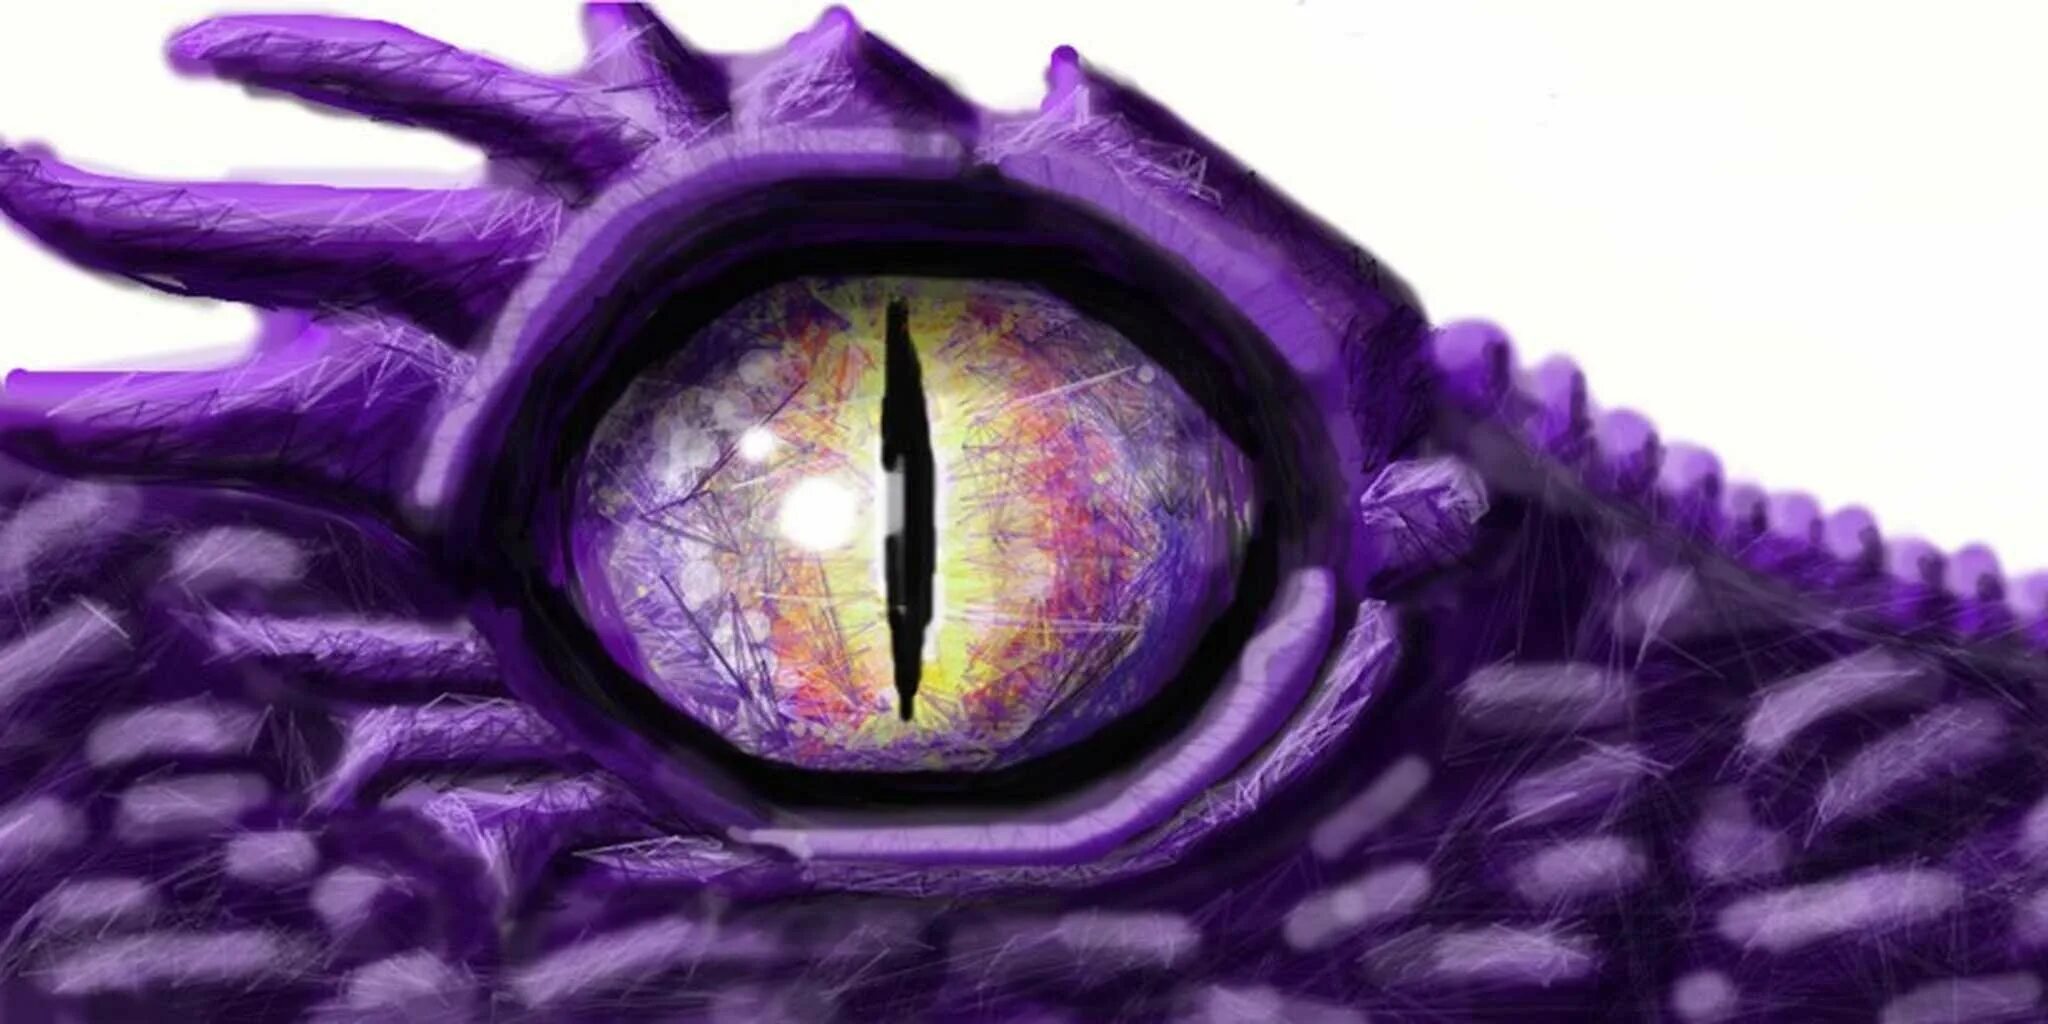 Dragon eye перевод. Кинг с. "глаза дракона". Фиолетовый глаз дракона. Фиолетовые глаза.